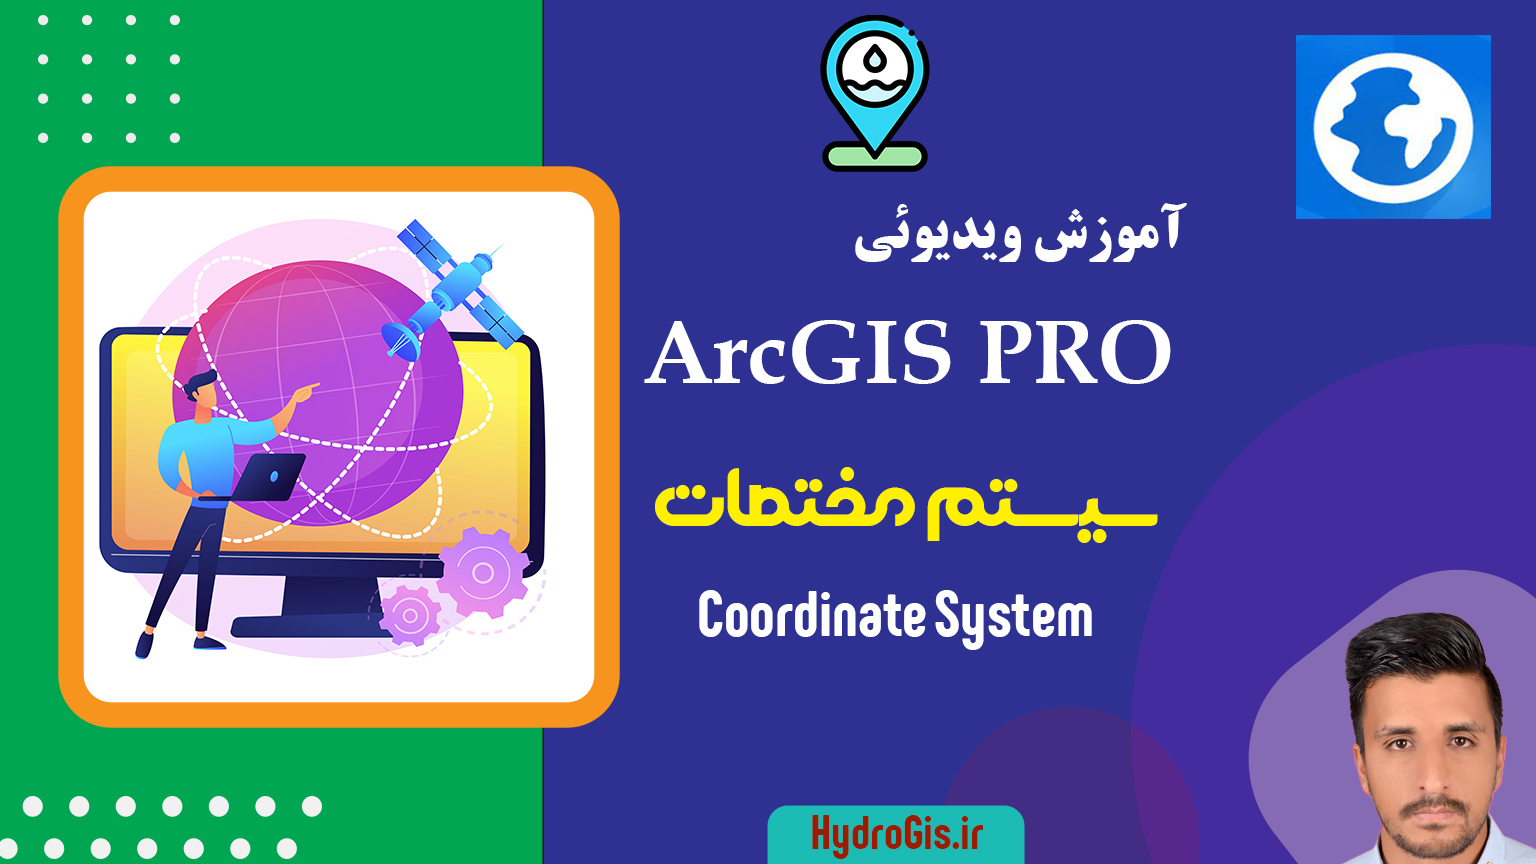 سیستم مختصات در ArcGIS Pro